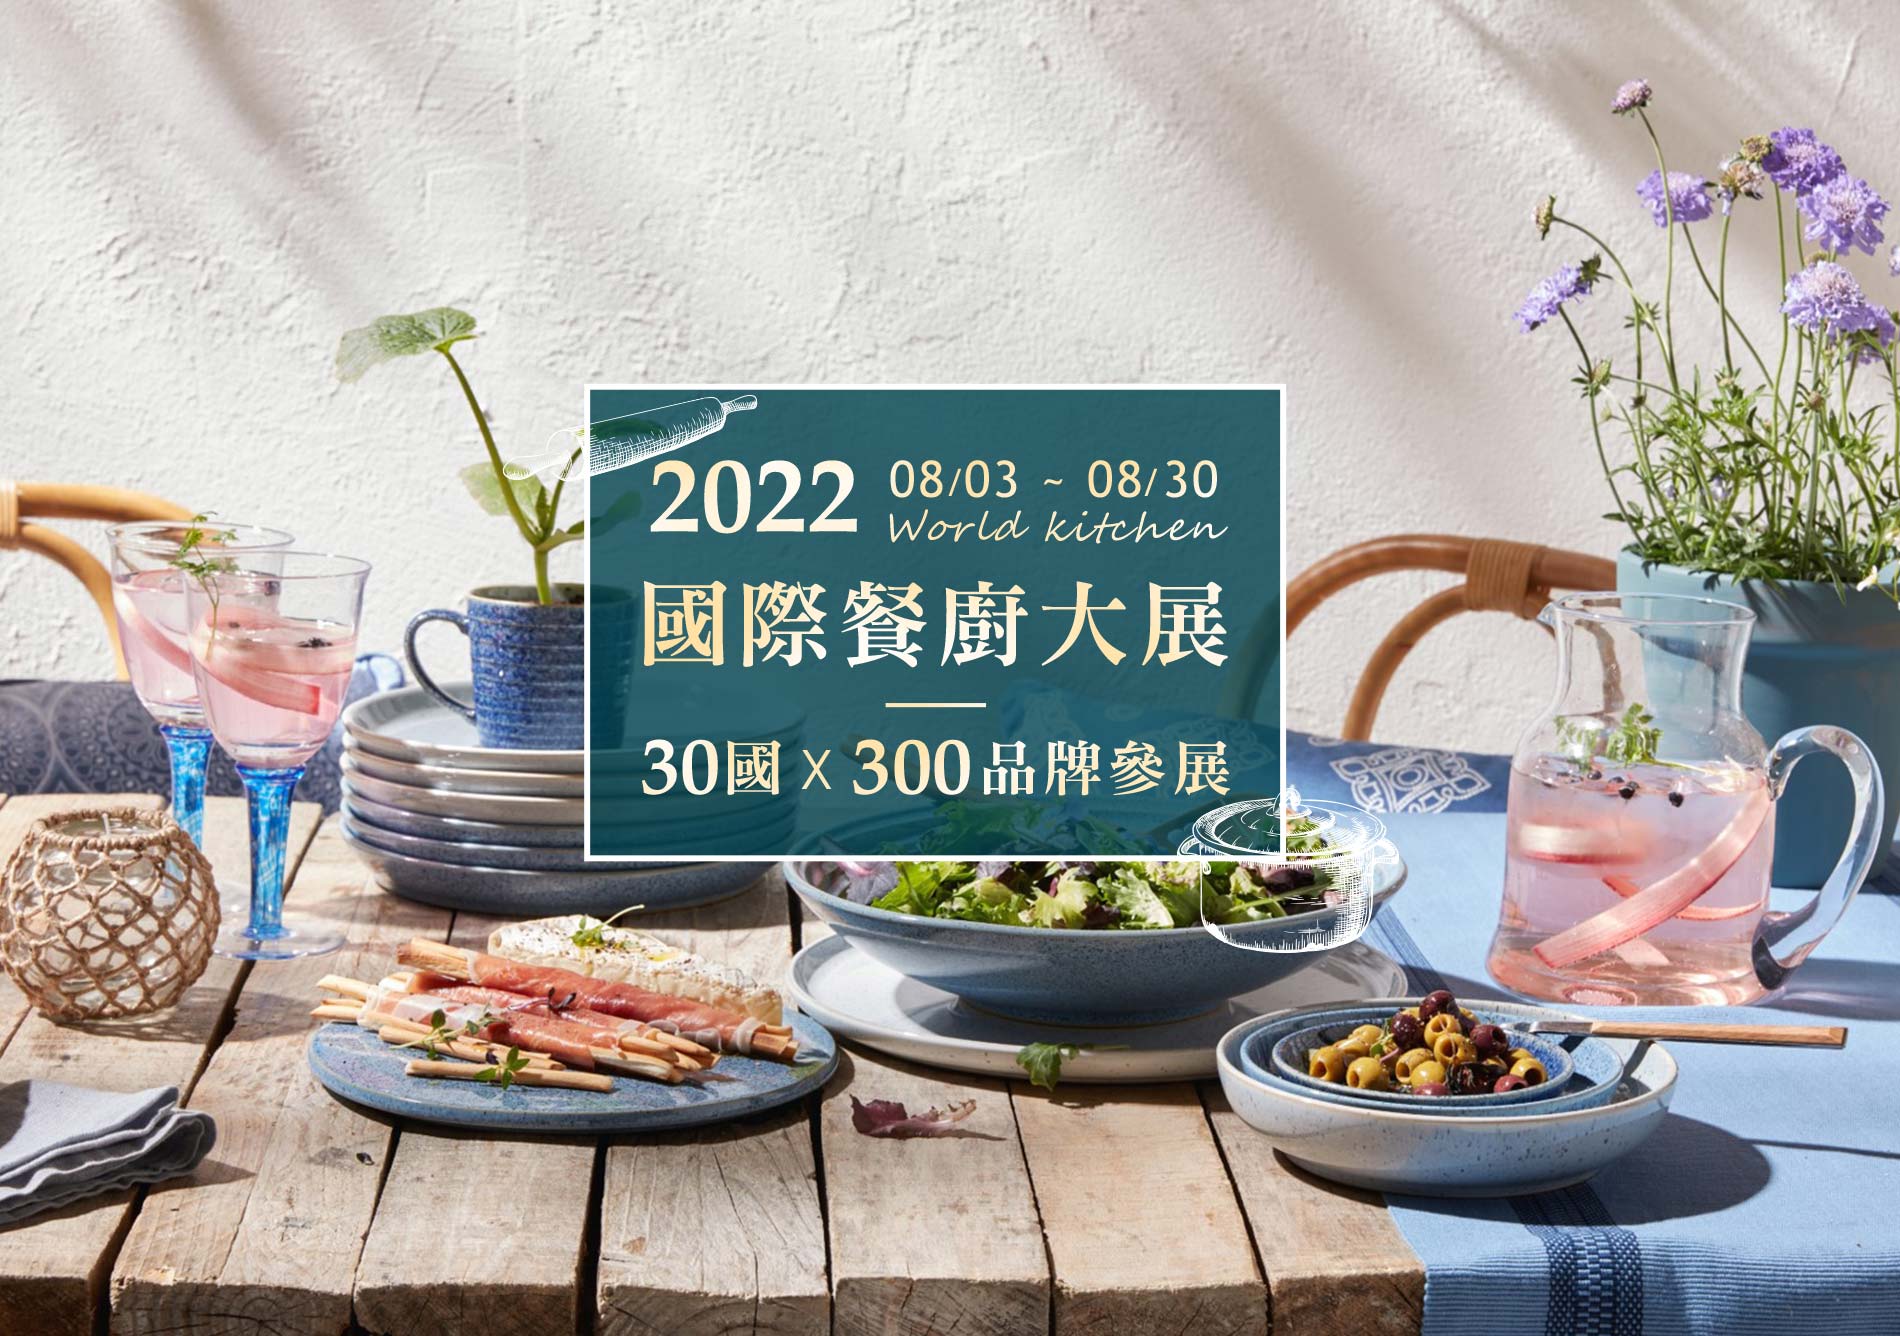 2022 國際餐廚大展 30國 X 300品牌參展 08/03-08/30  